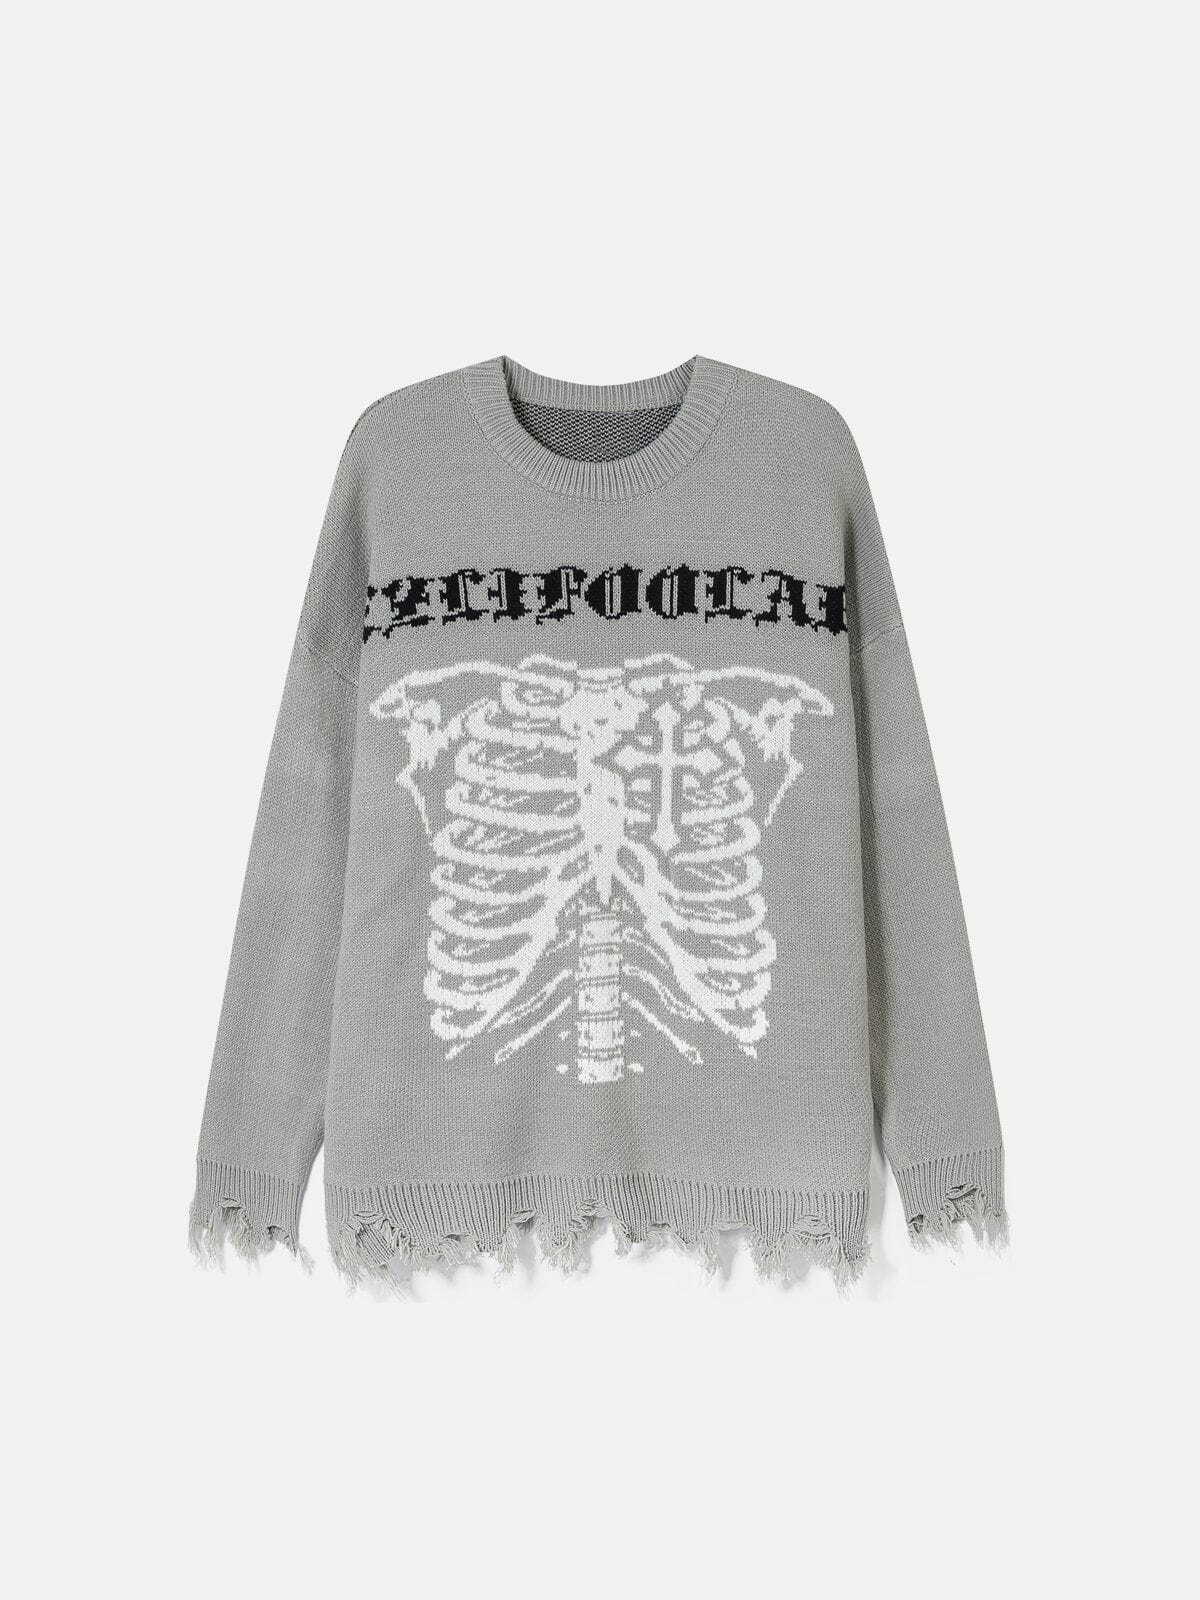 edgy skeleton breakage sweater retro streetwear 2279